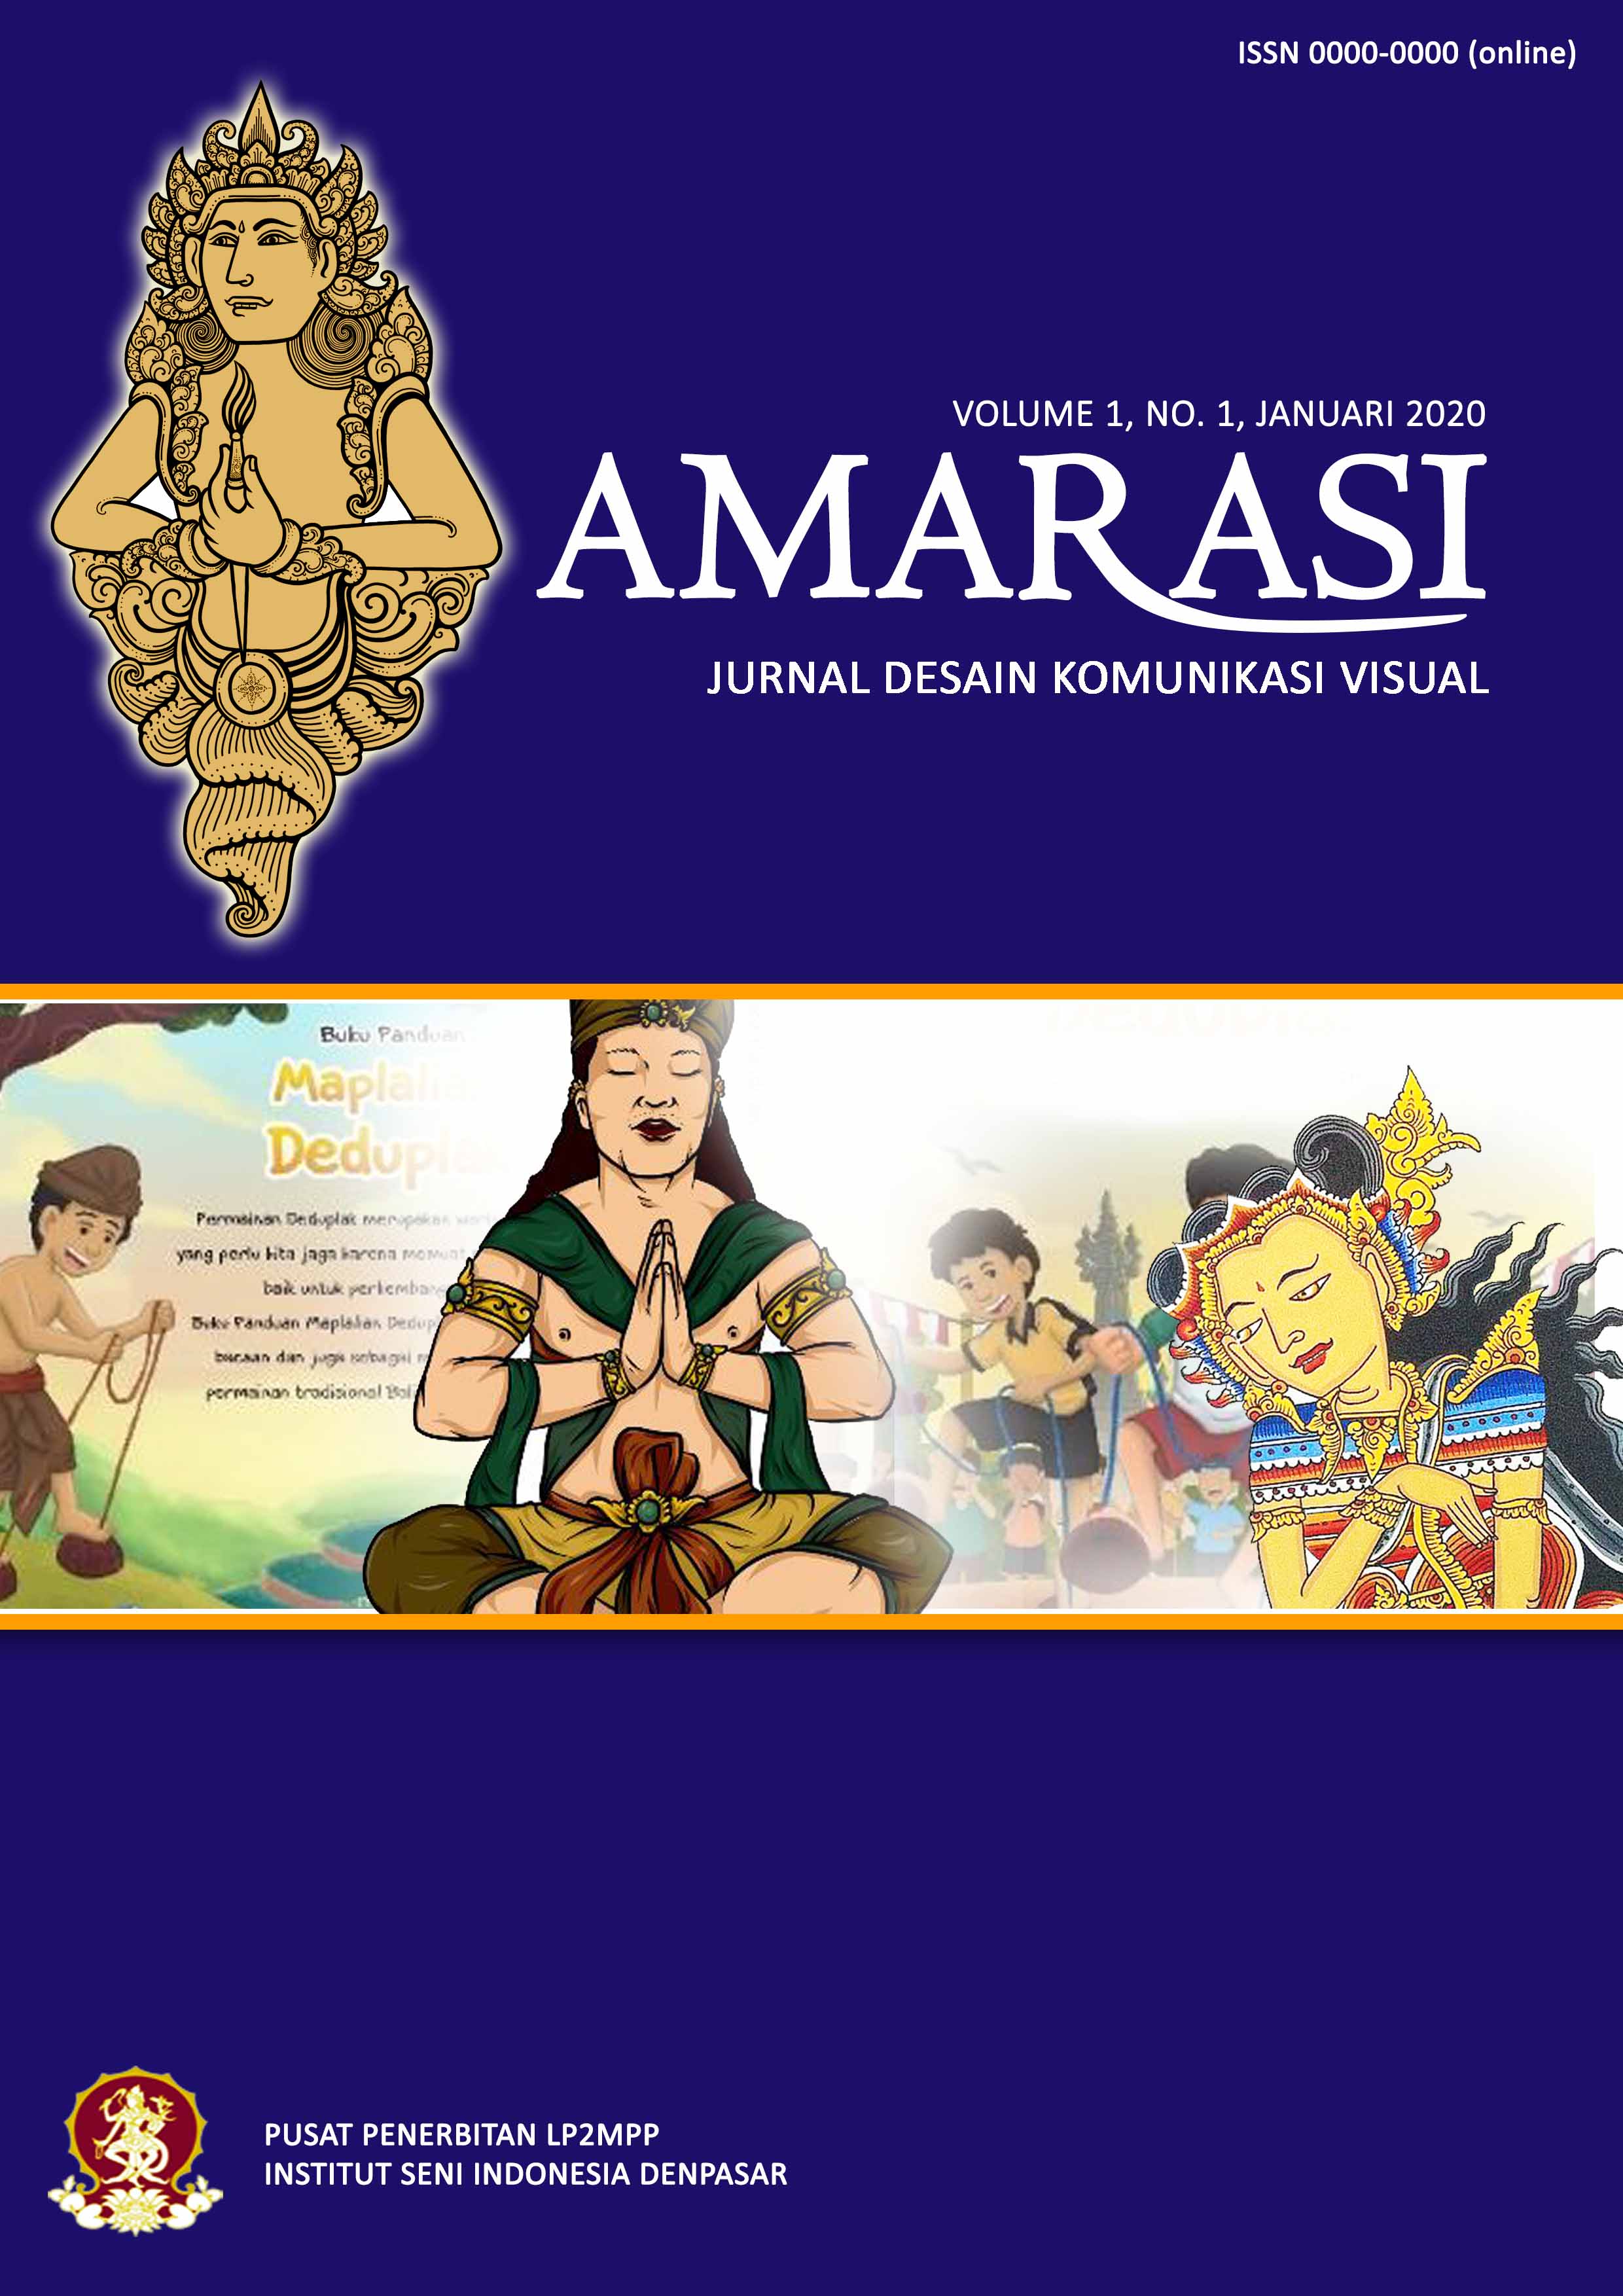 Jurnal Amarasi, Desain Komunikas Visual, ISI Denpasar